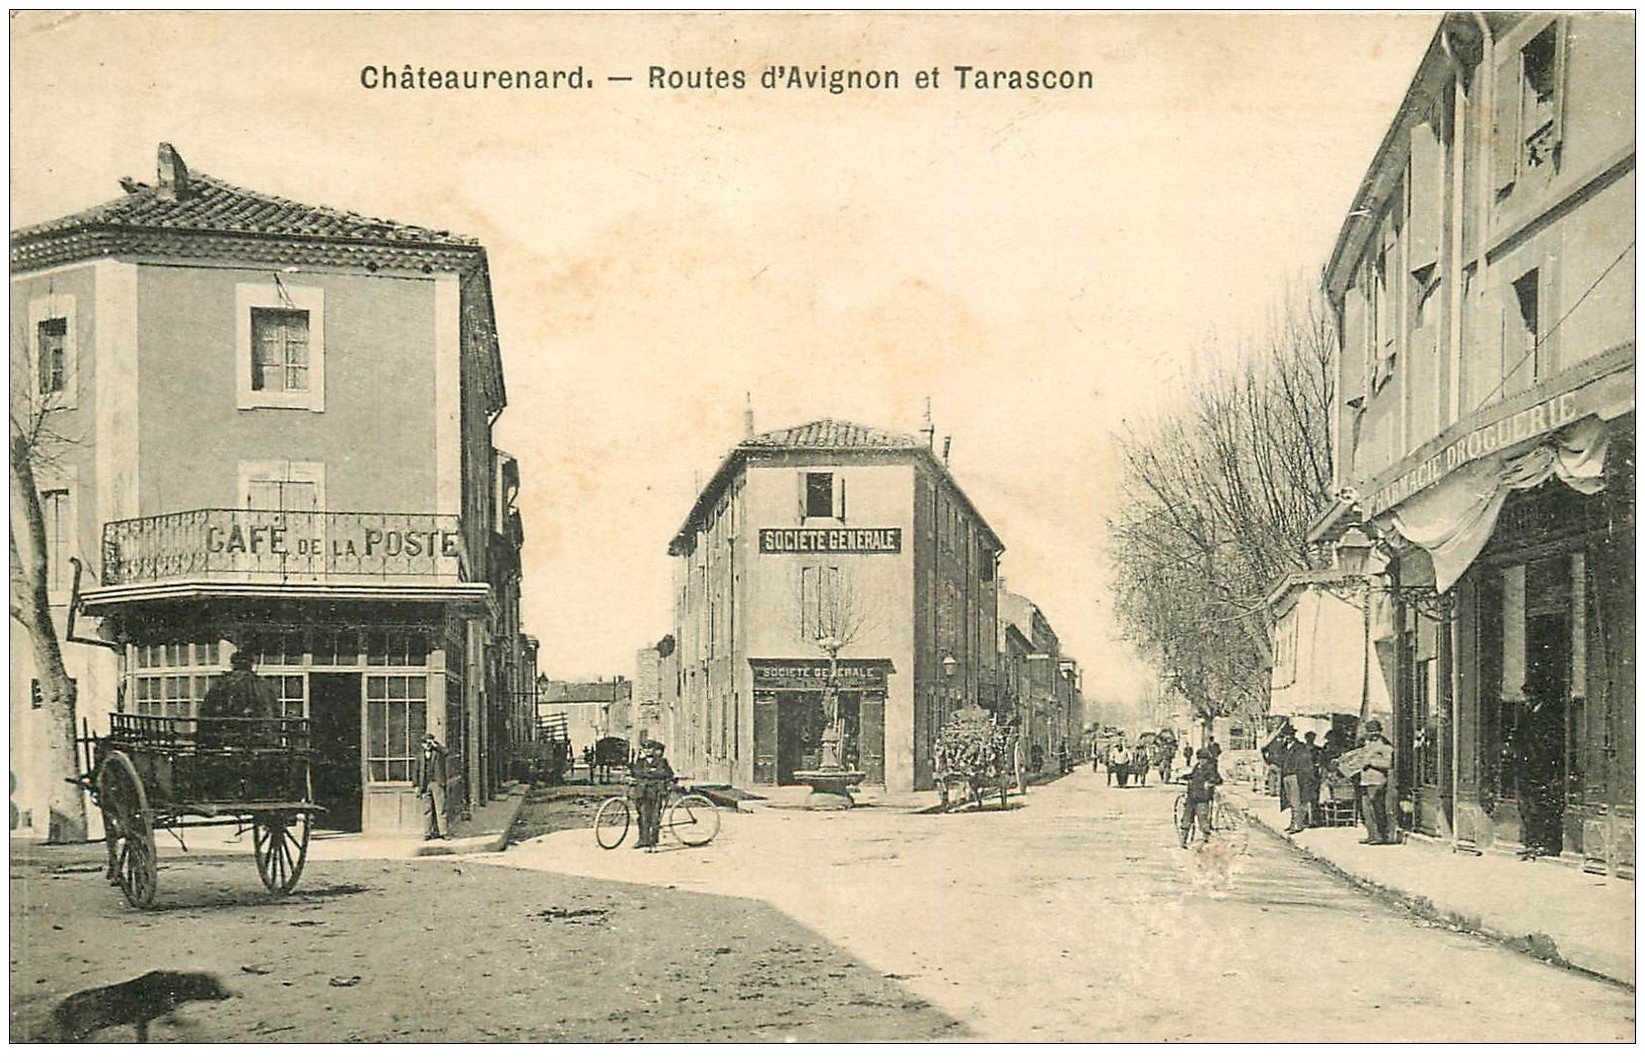 13 CHATEAURENARD. Routes d'Avignon et Tarascon. Banque Société Générale et Café de la Poste 1904. Pharmacie